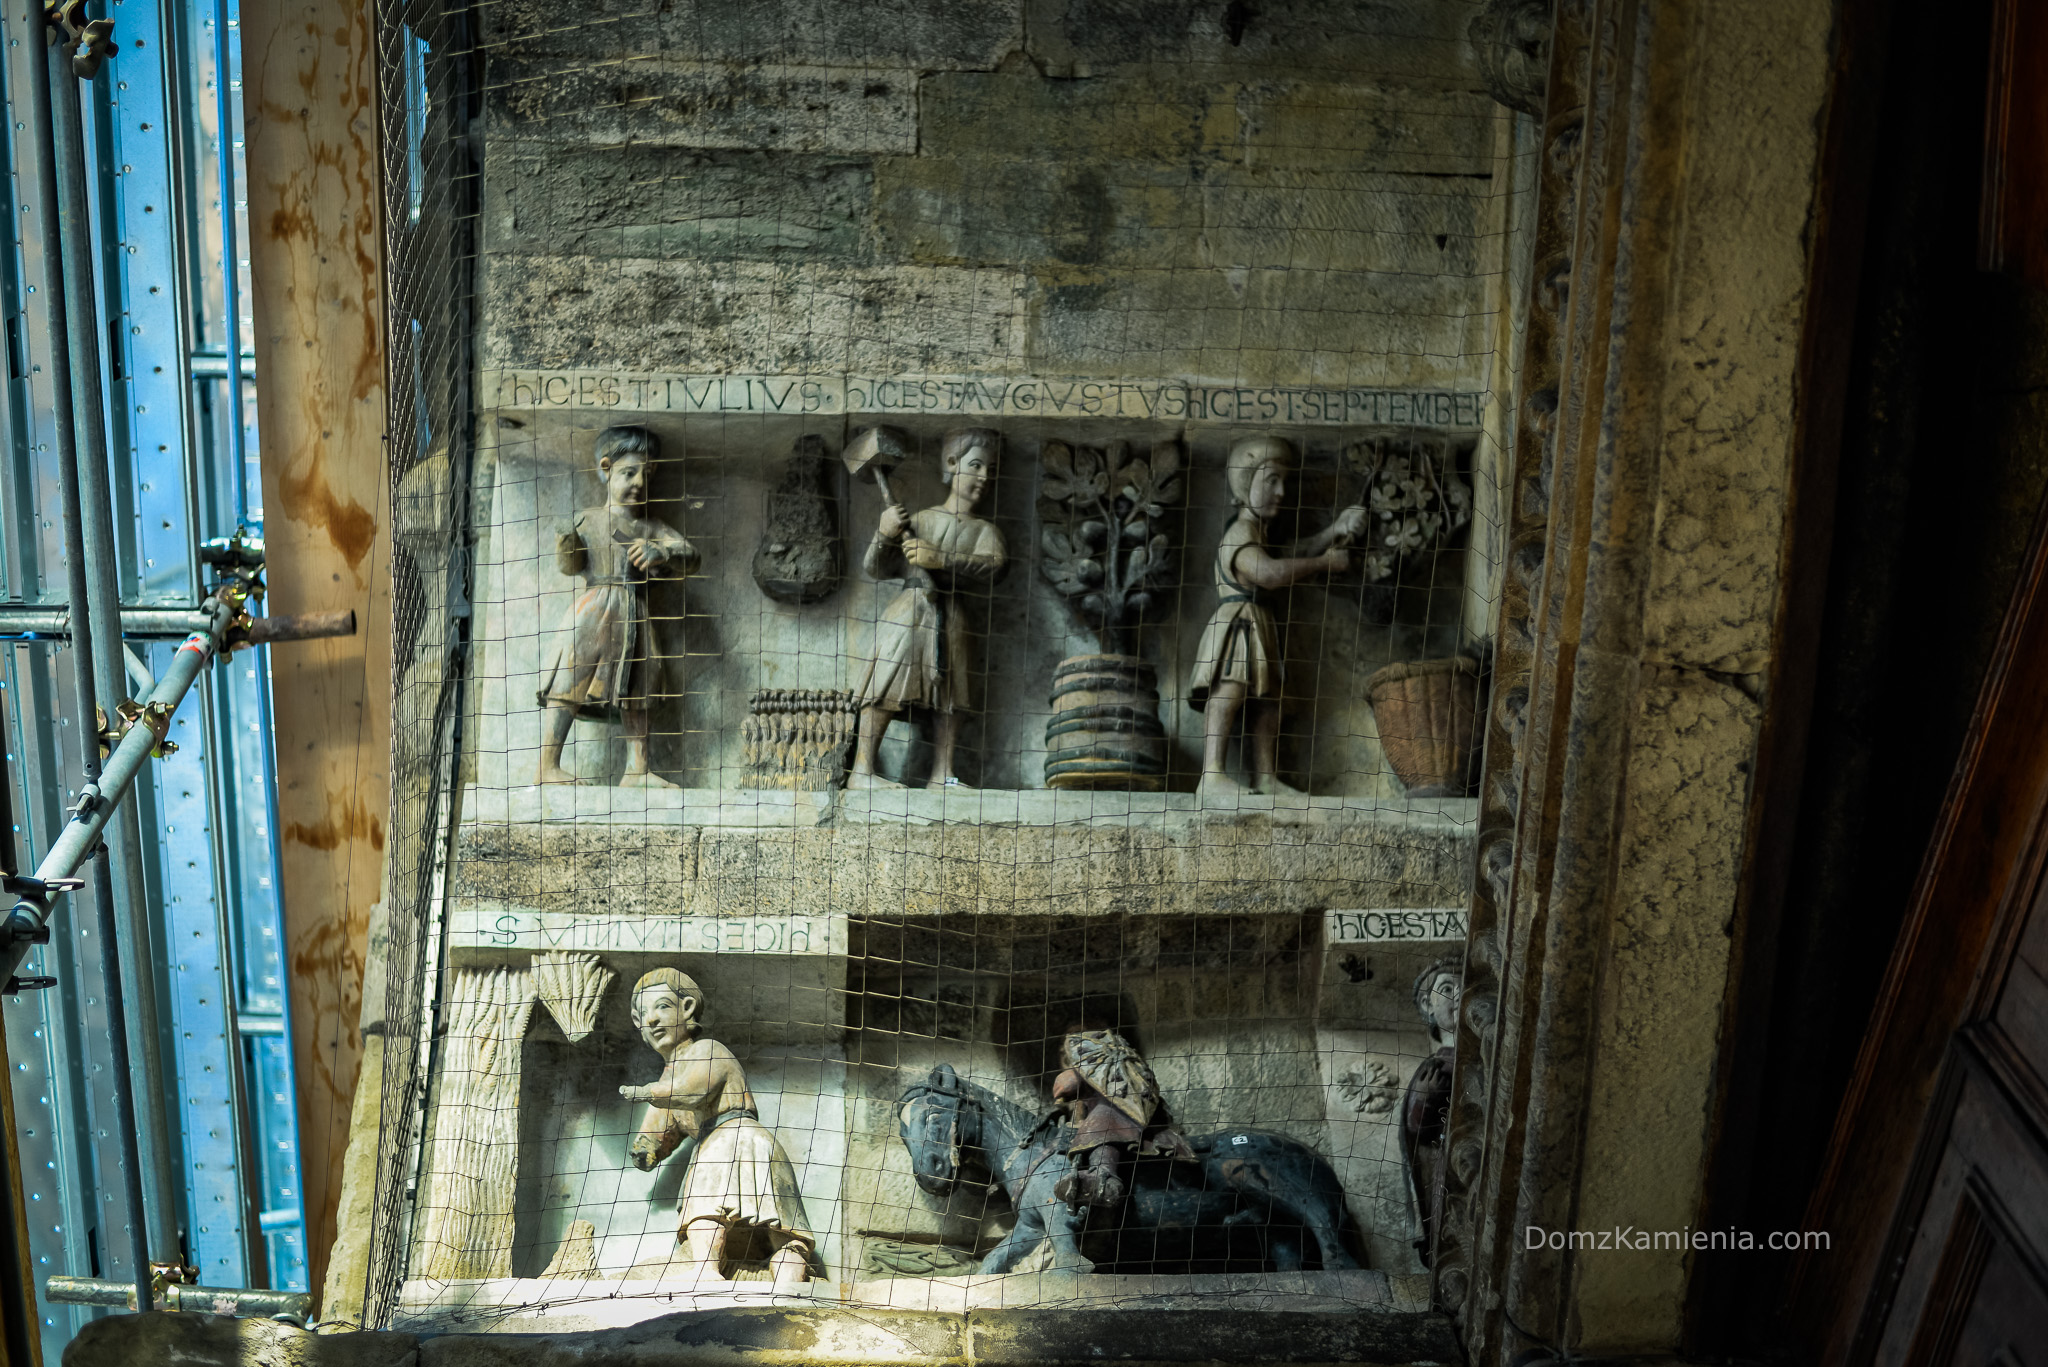 Co zobaczyć w Arezzo, Dom z Kamienia blog Kasi Nowackiej